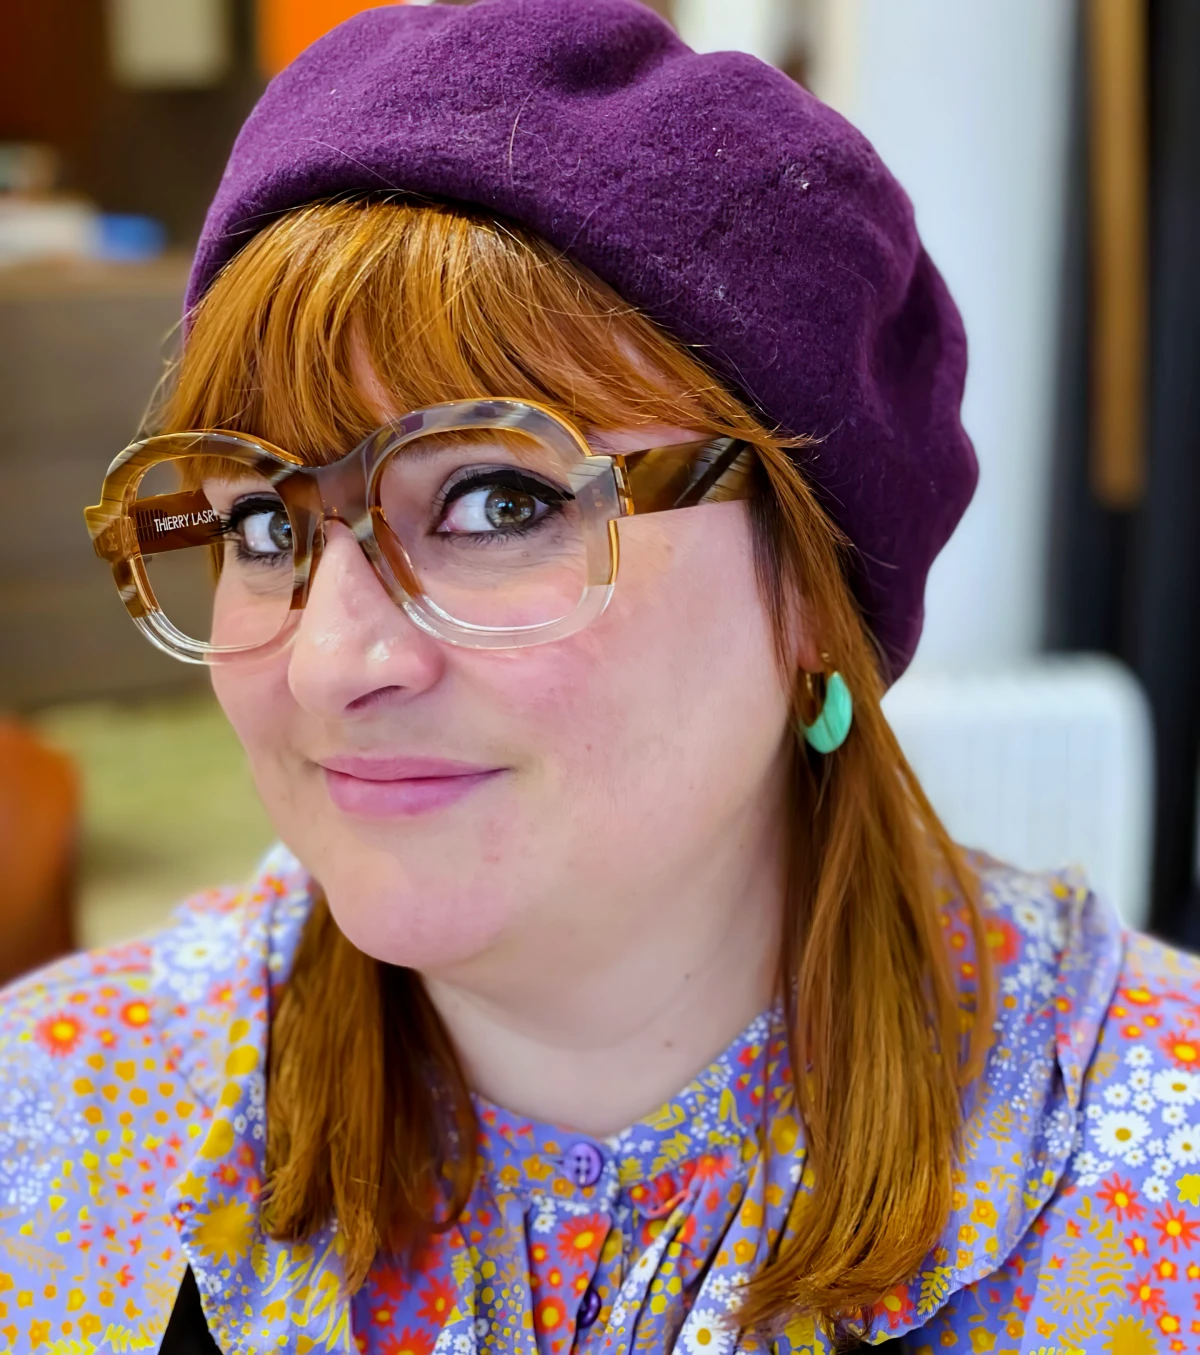 lunettes de vue rajeunissante style vinatge femme beret violet